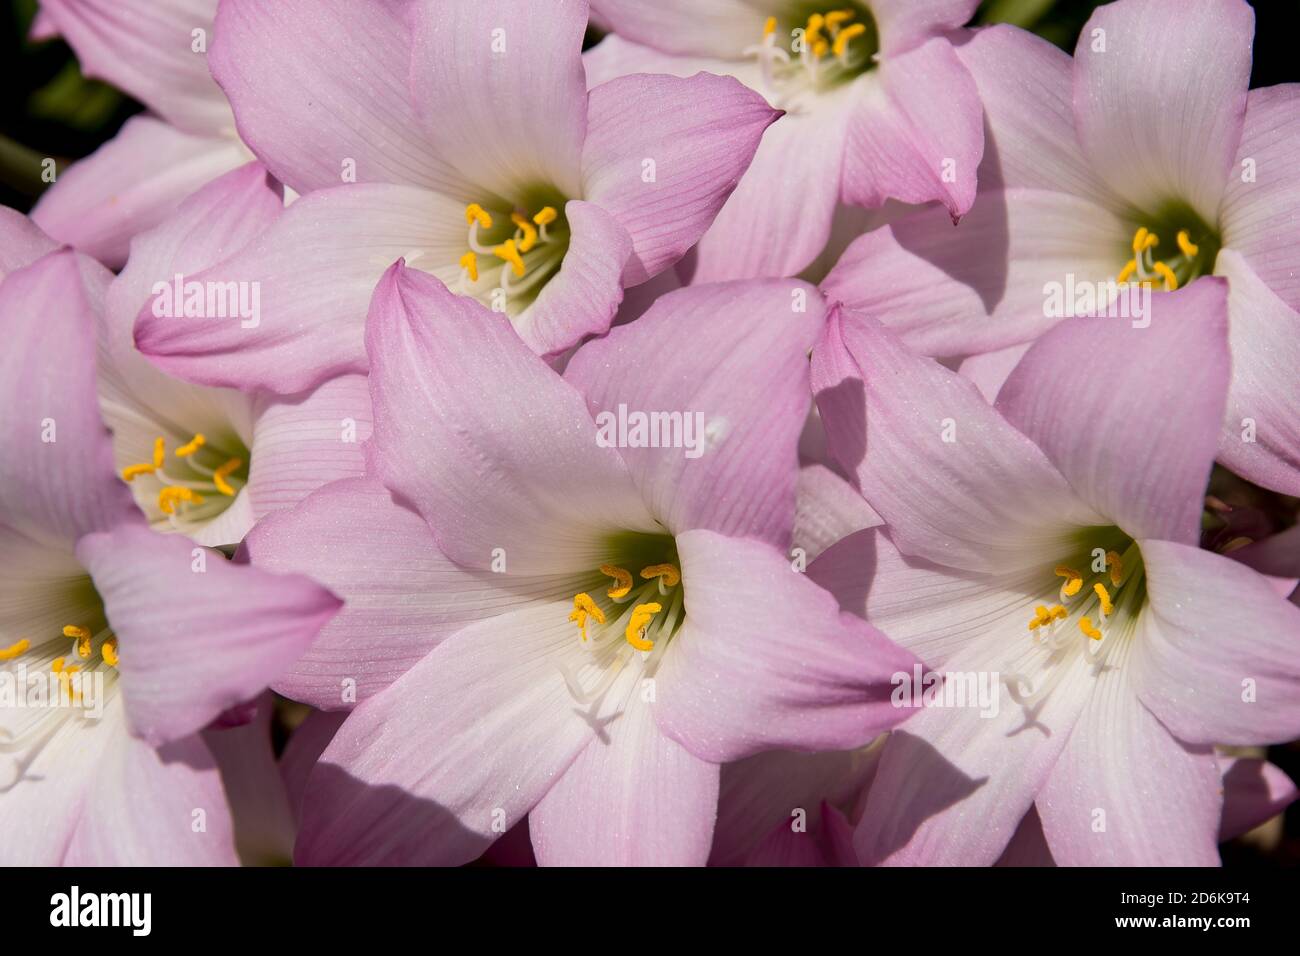 Fleurs de nénuphars roses et blanches (zéphyranthes grandiflora). Les bulbes entrent en fleur dans les heures de pluie en été. Jardin privé australien. Banque D'Images